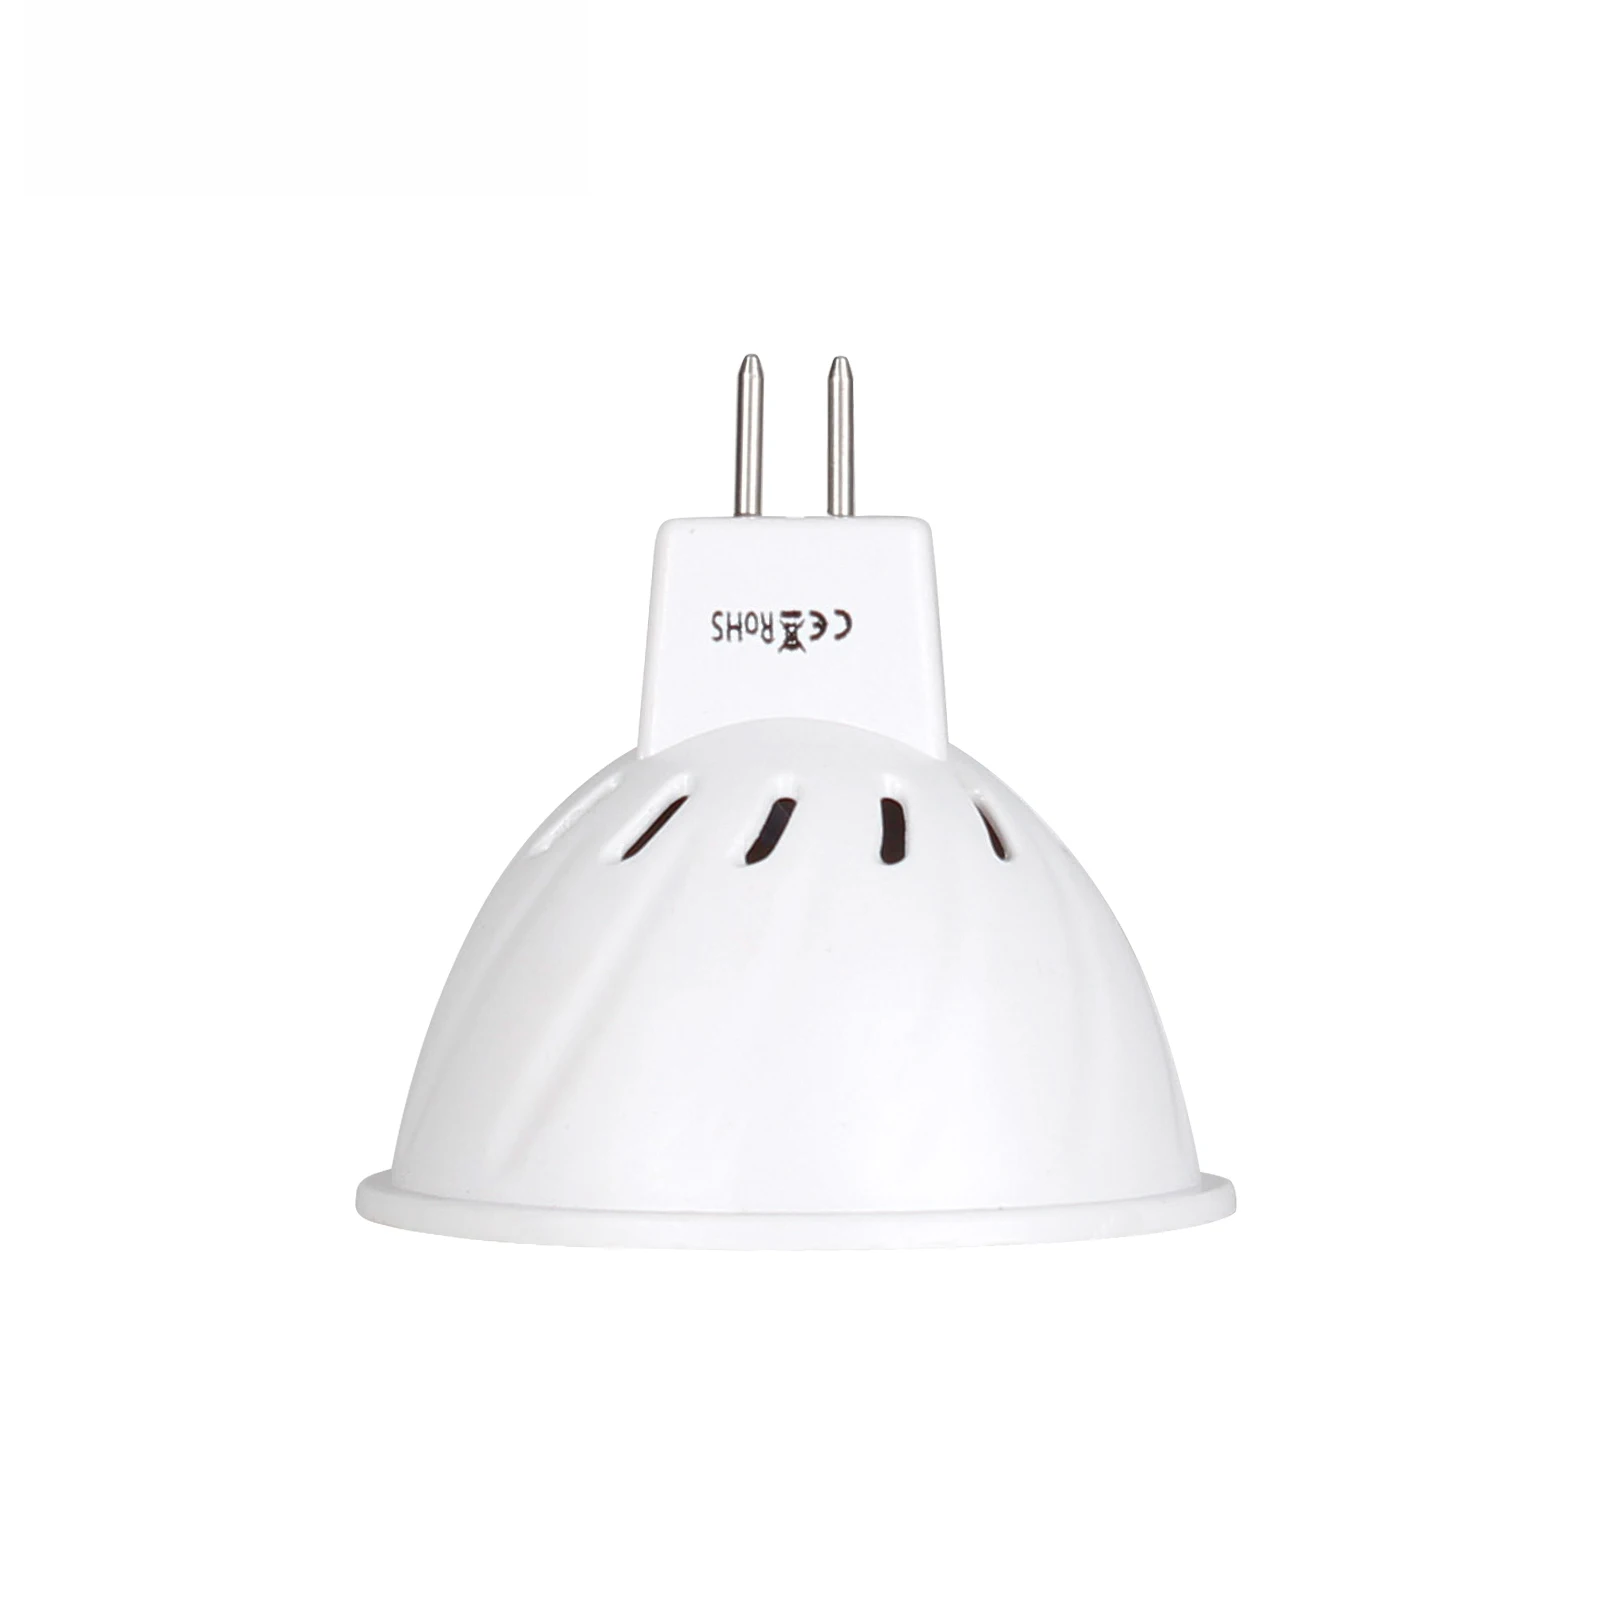 4W 6W 8W MR16 DC 12V 24V LED Bulbs Light SMD 2835 Led Spotlights Warm / Cool White / White MR 16 220V LED Lamp For Home High images - 6